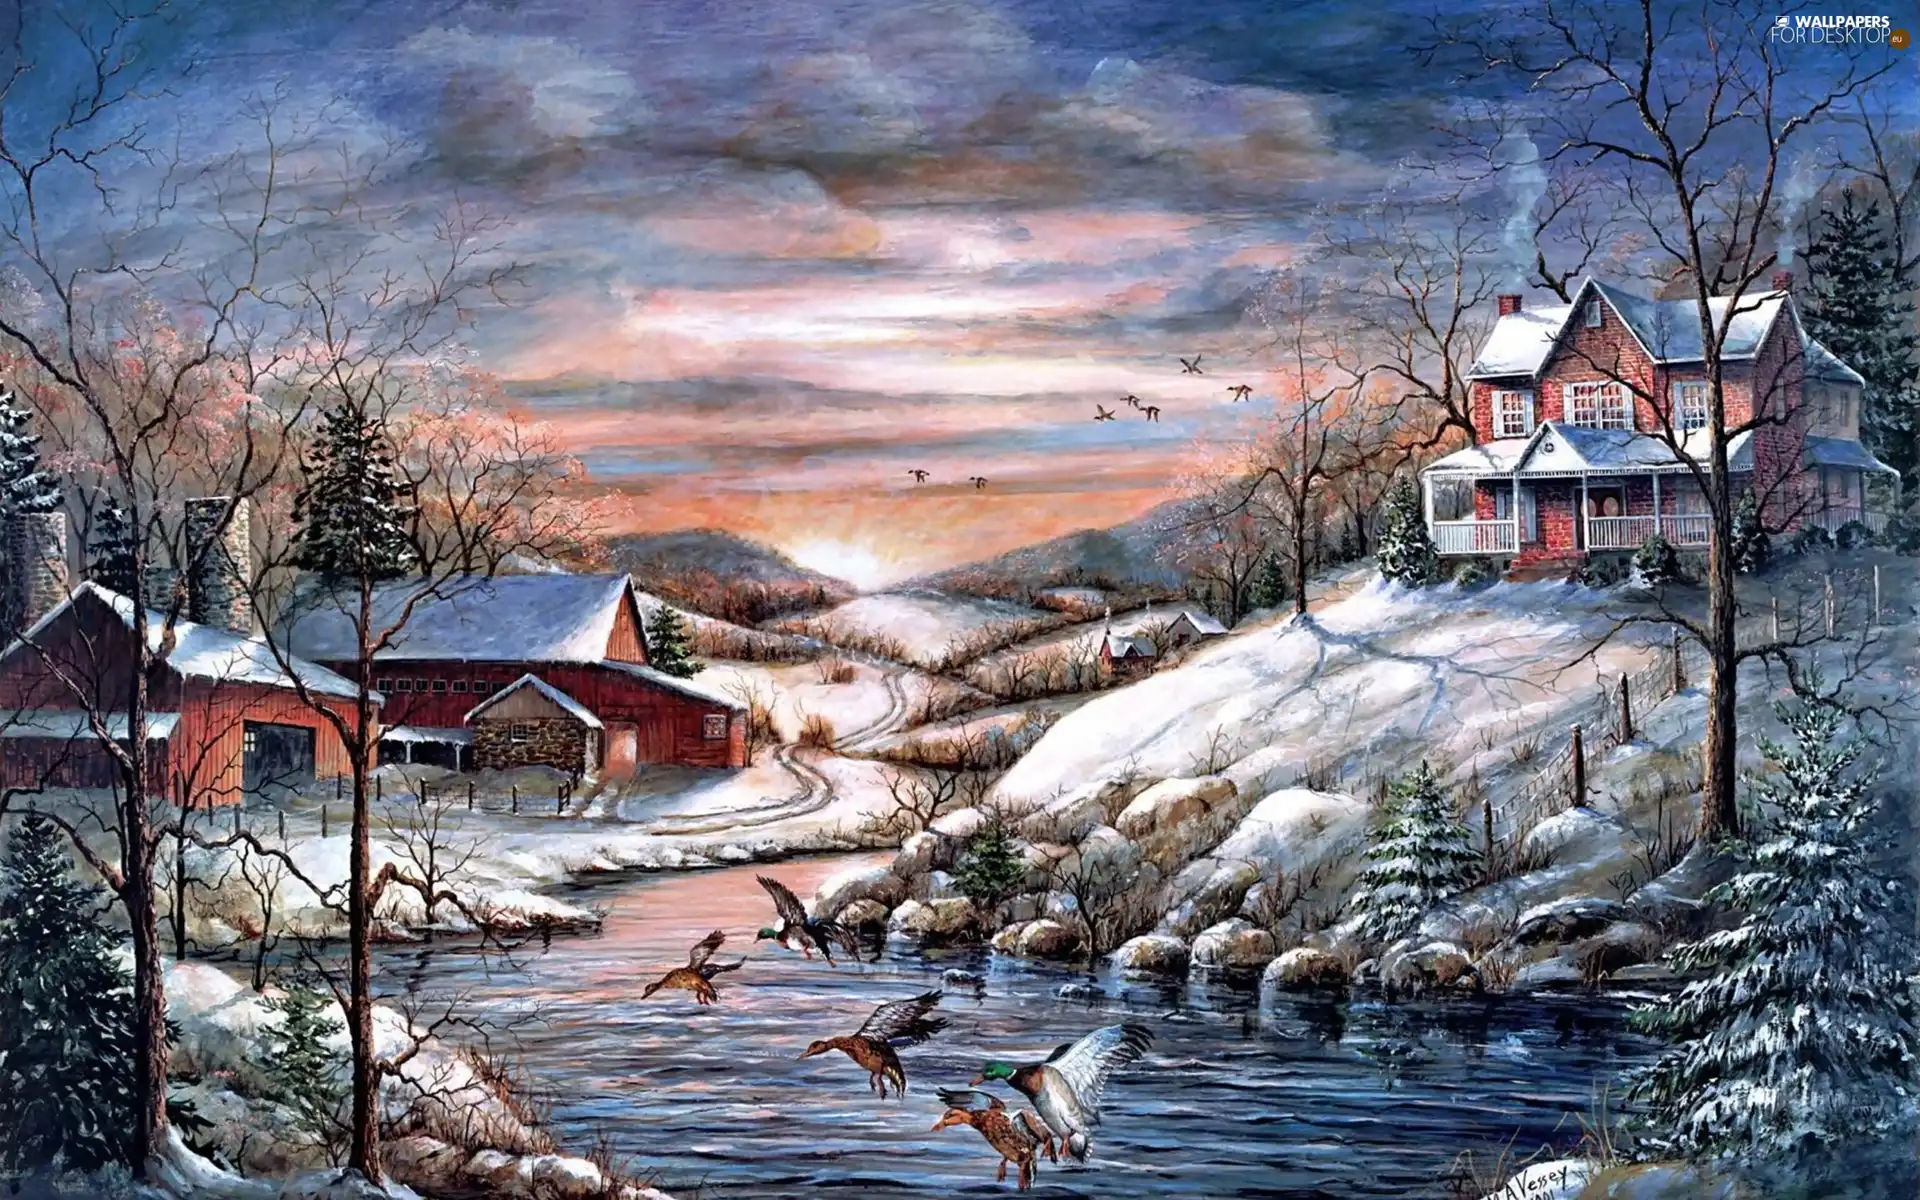 River, Houses, winter, ducks